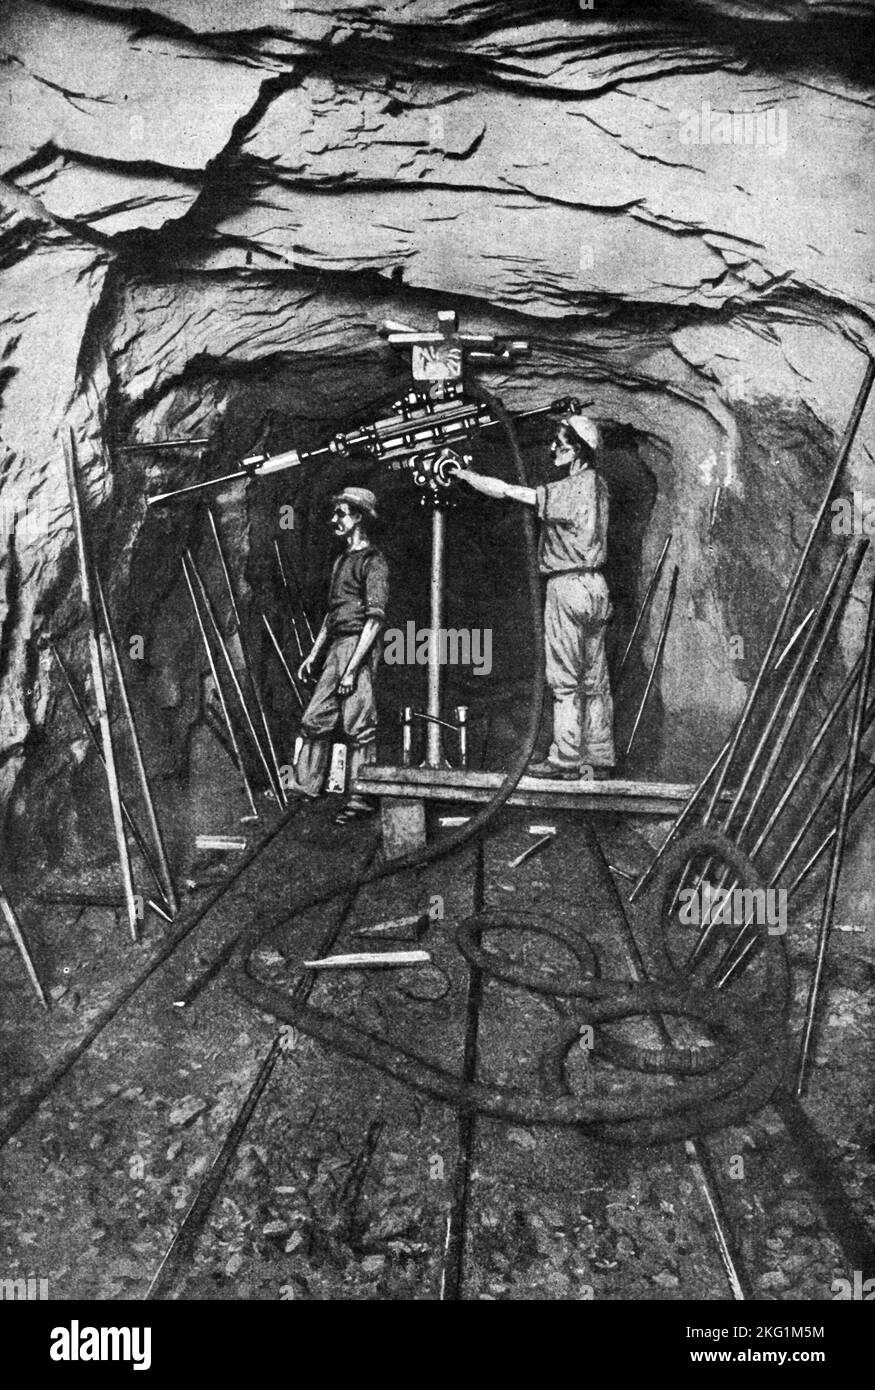 Vintage-Foto um 1900, das Goldminen mit einem pneumatischen Druckluftbohrer zeigt, um goldhaltigen Quarz in einem versunkenen Riff in einem Minentunnel in Westaustralien zu extrahieren Stockfoto